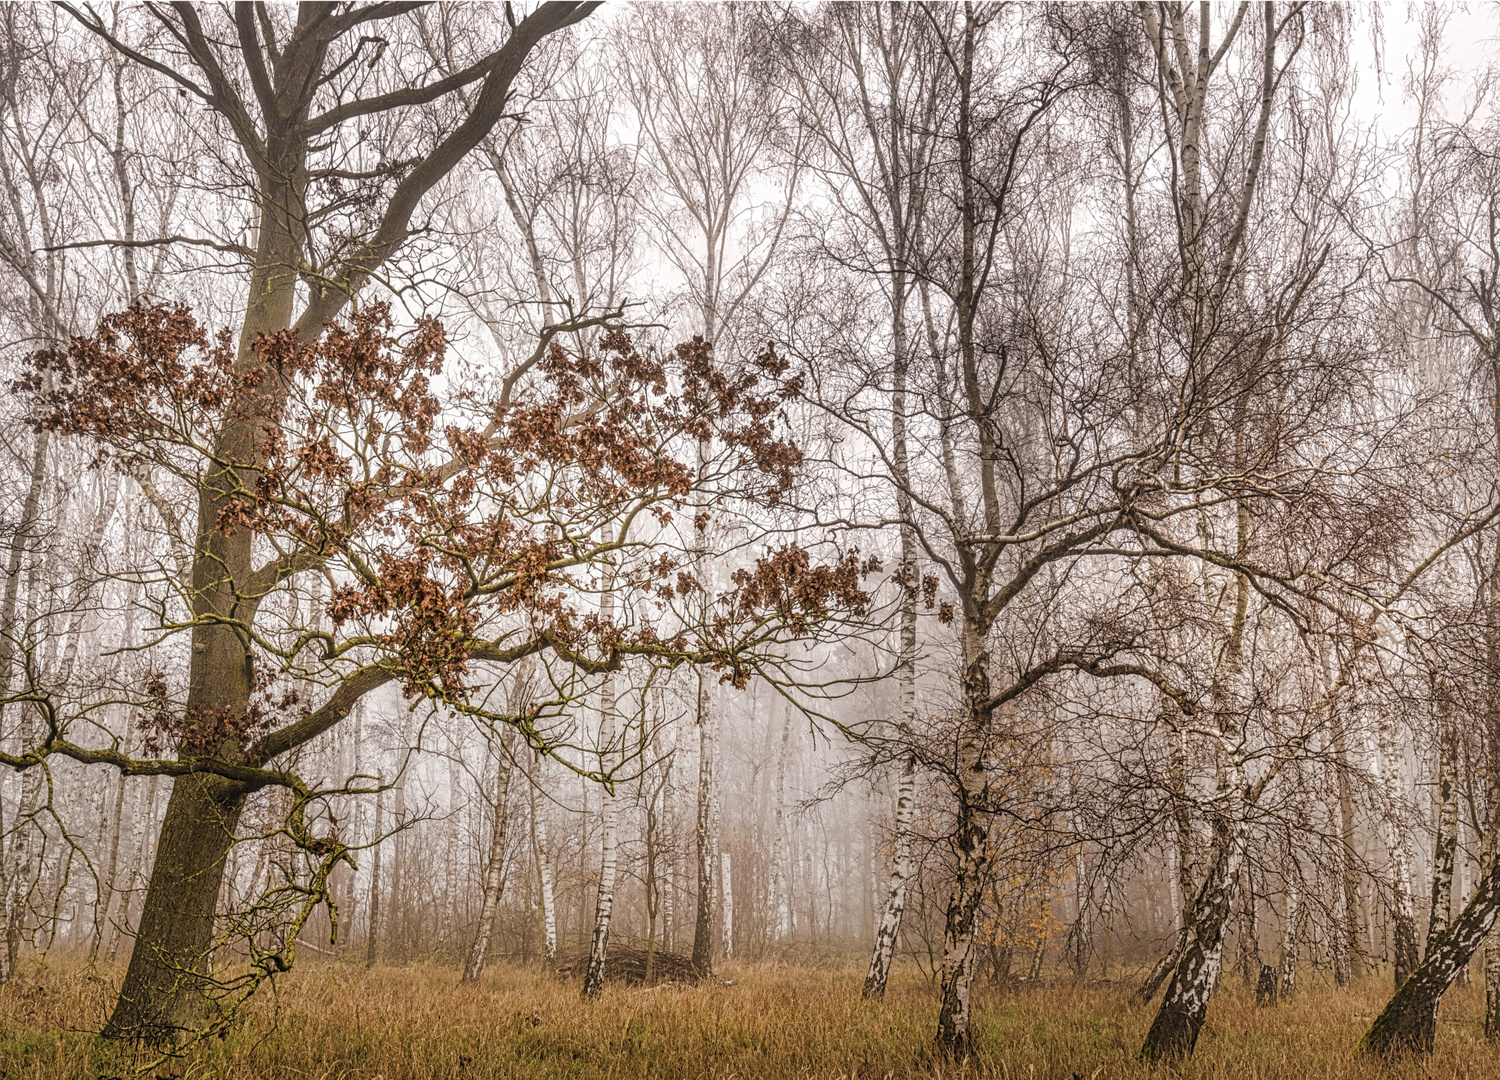 Birkenwäldchen im Nebel